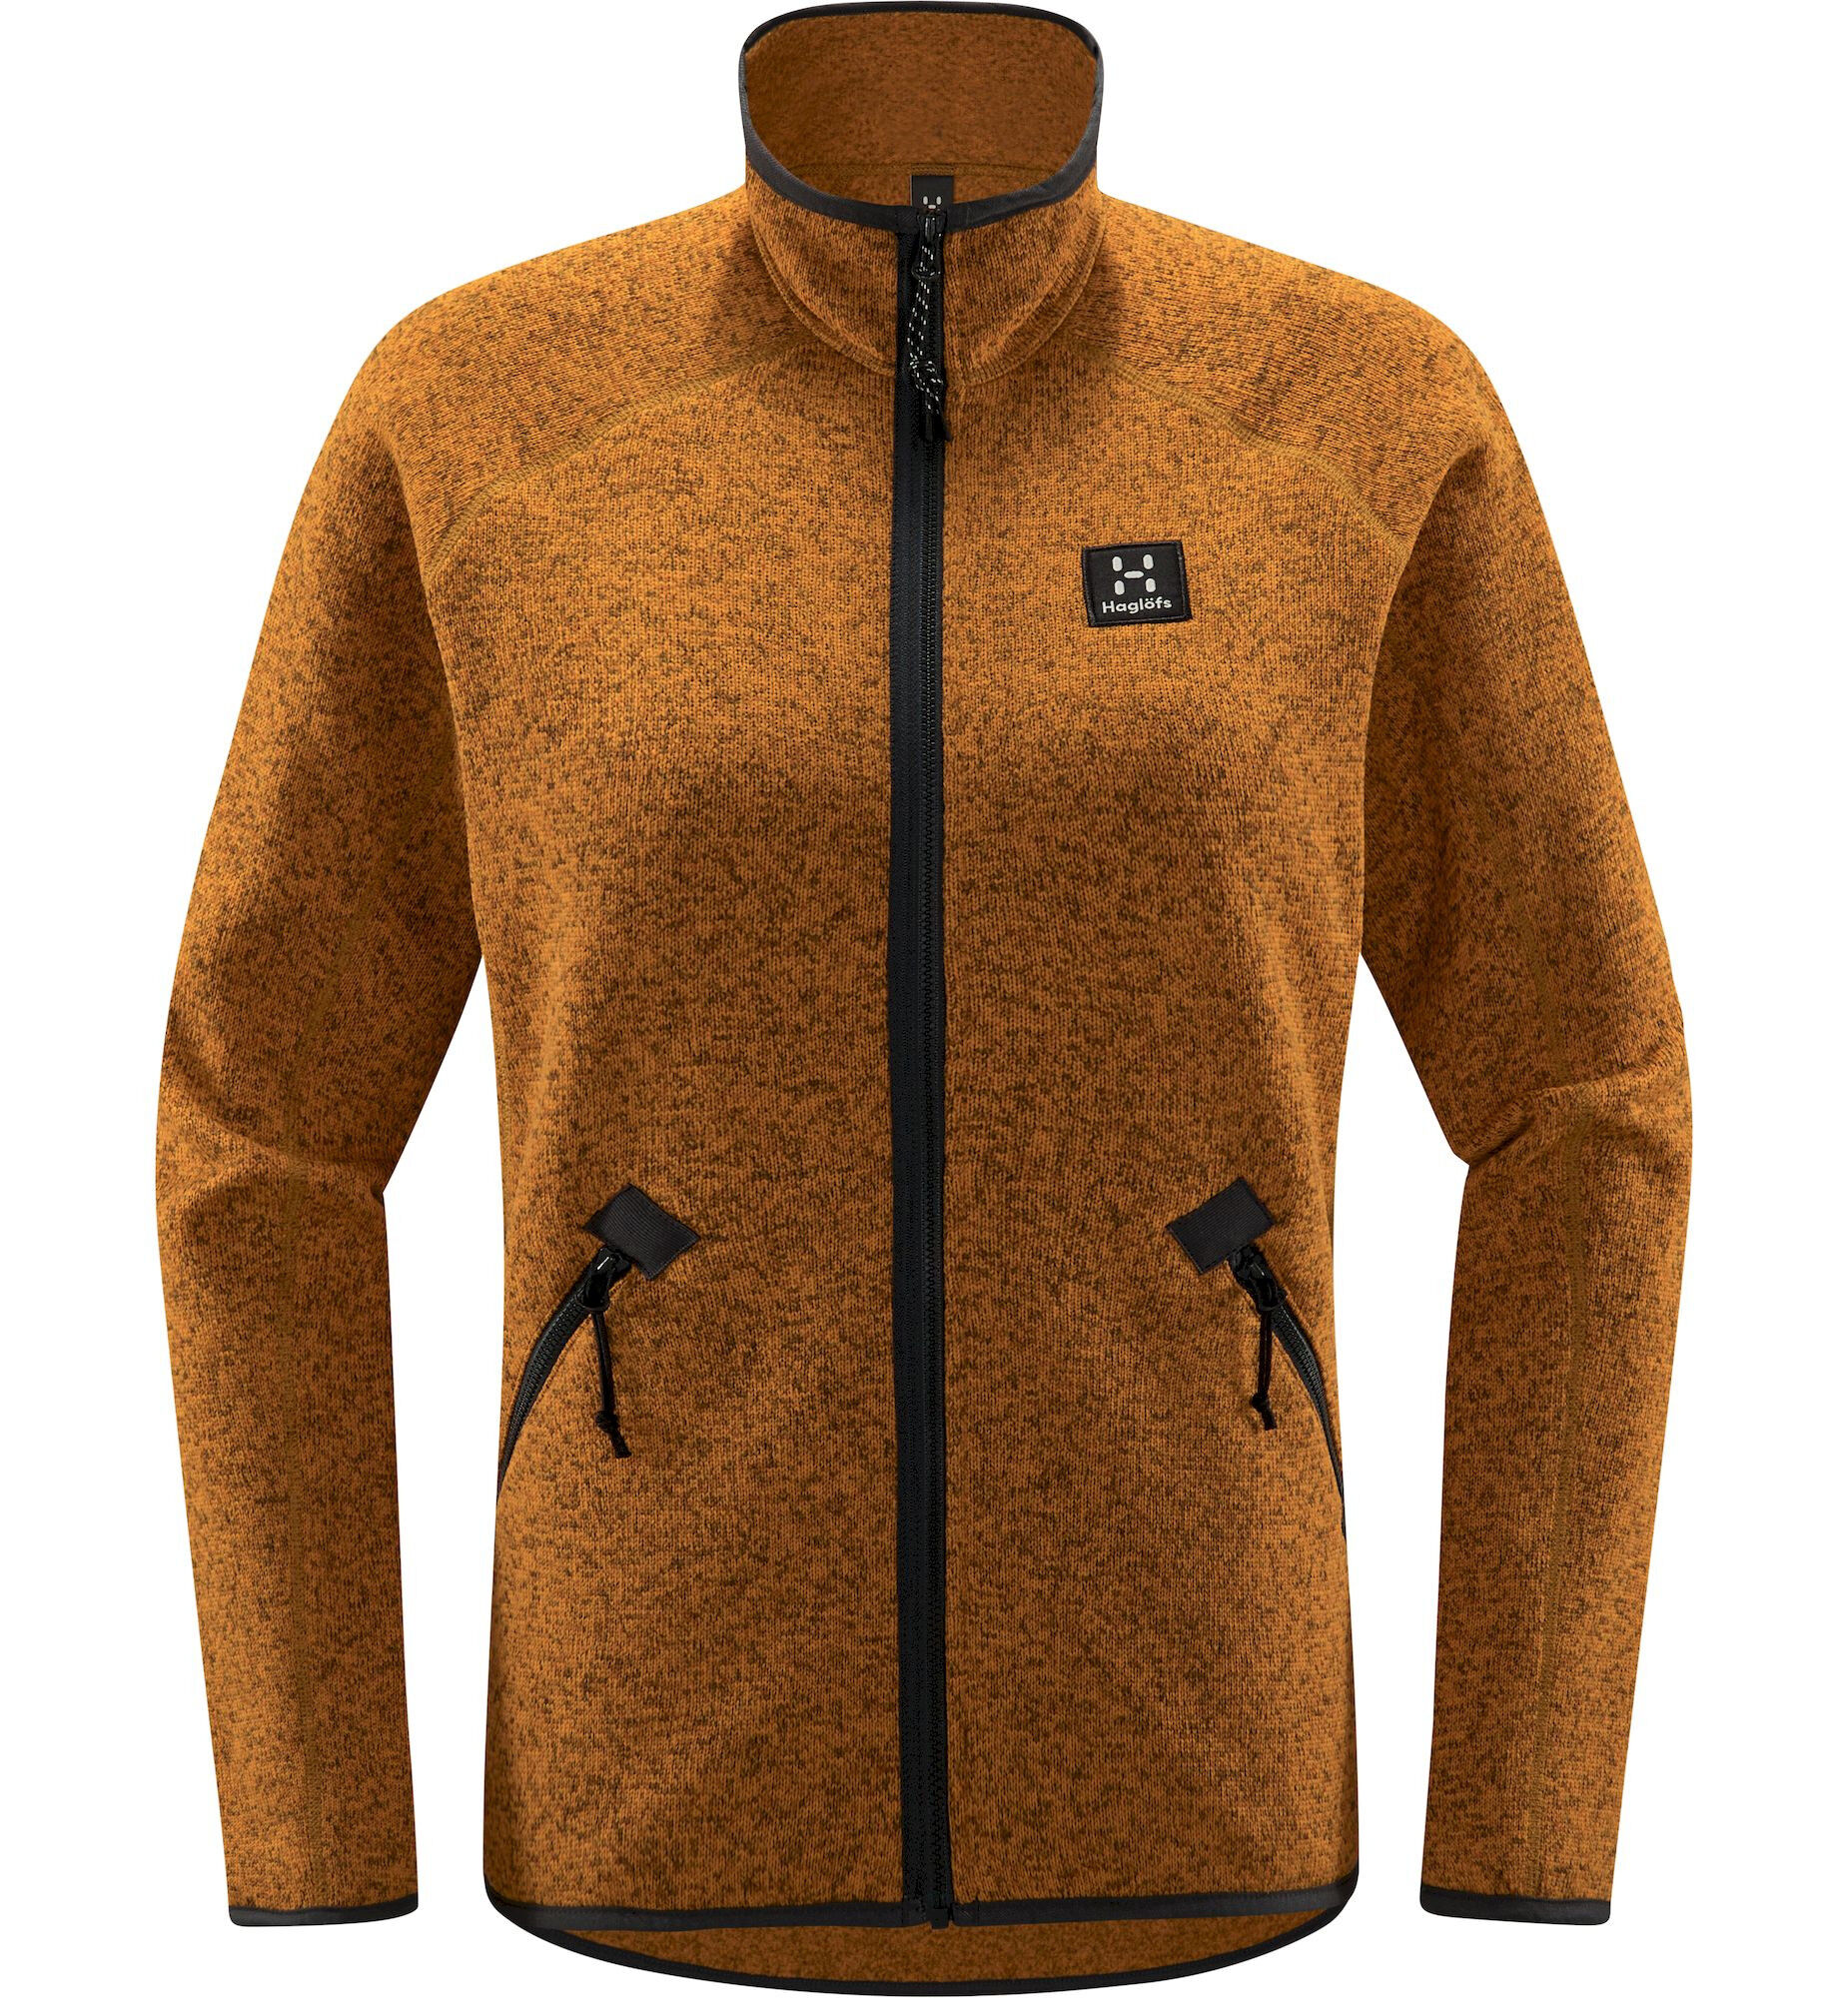 Haglöfs Risberg Jacket - Fleece jacket - Women's